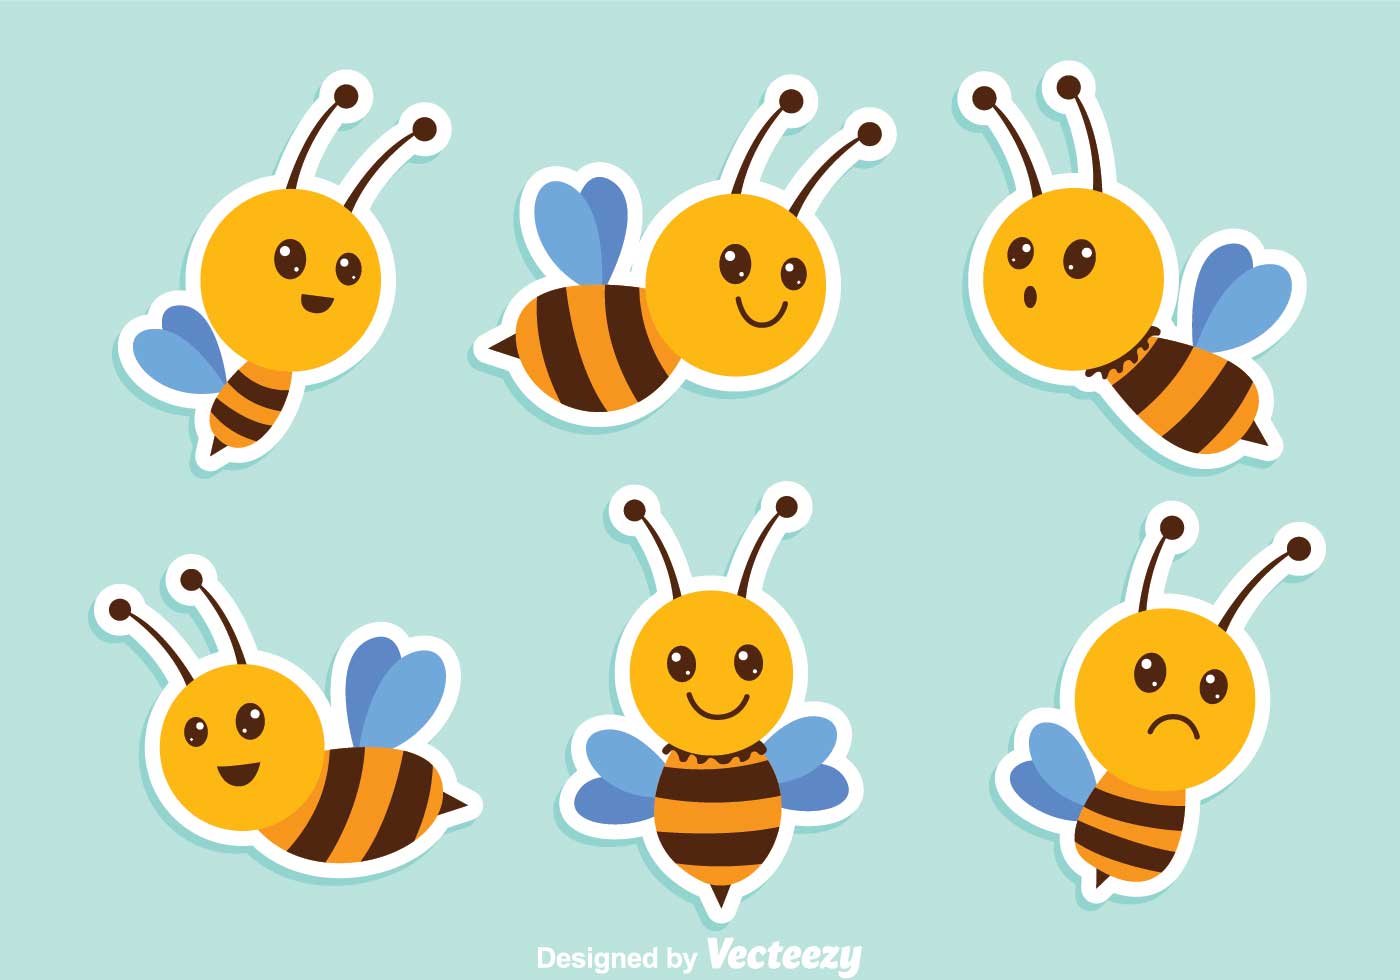 Cute Bee Vectors - Download Free Vectors, Clipart Graphics ...